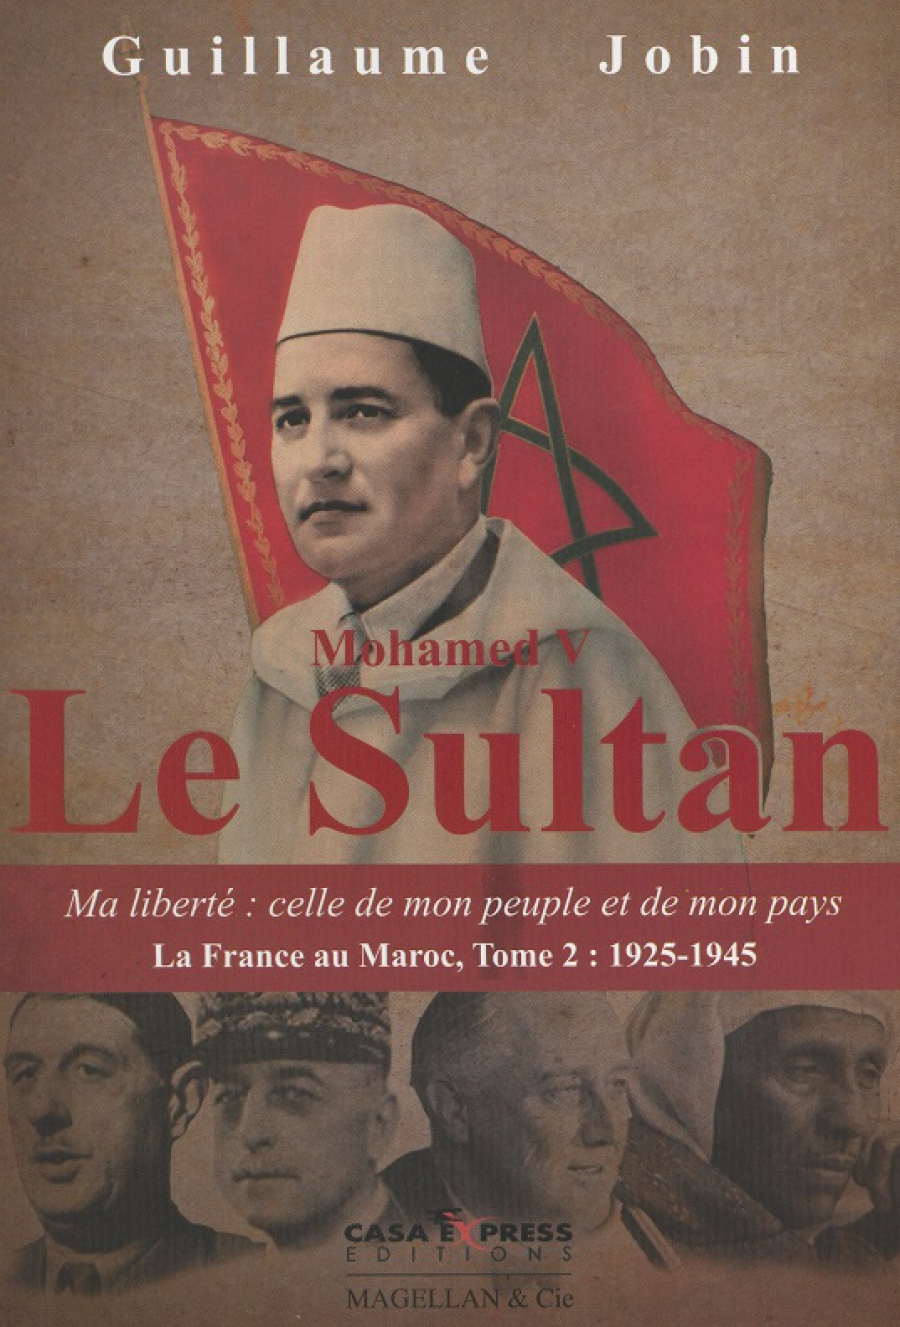 Guillaume Jobin, Mohamed V, le Sultan.